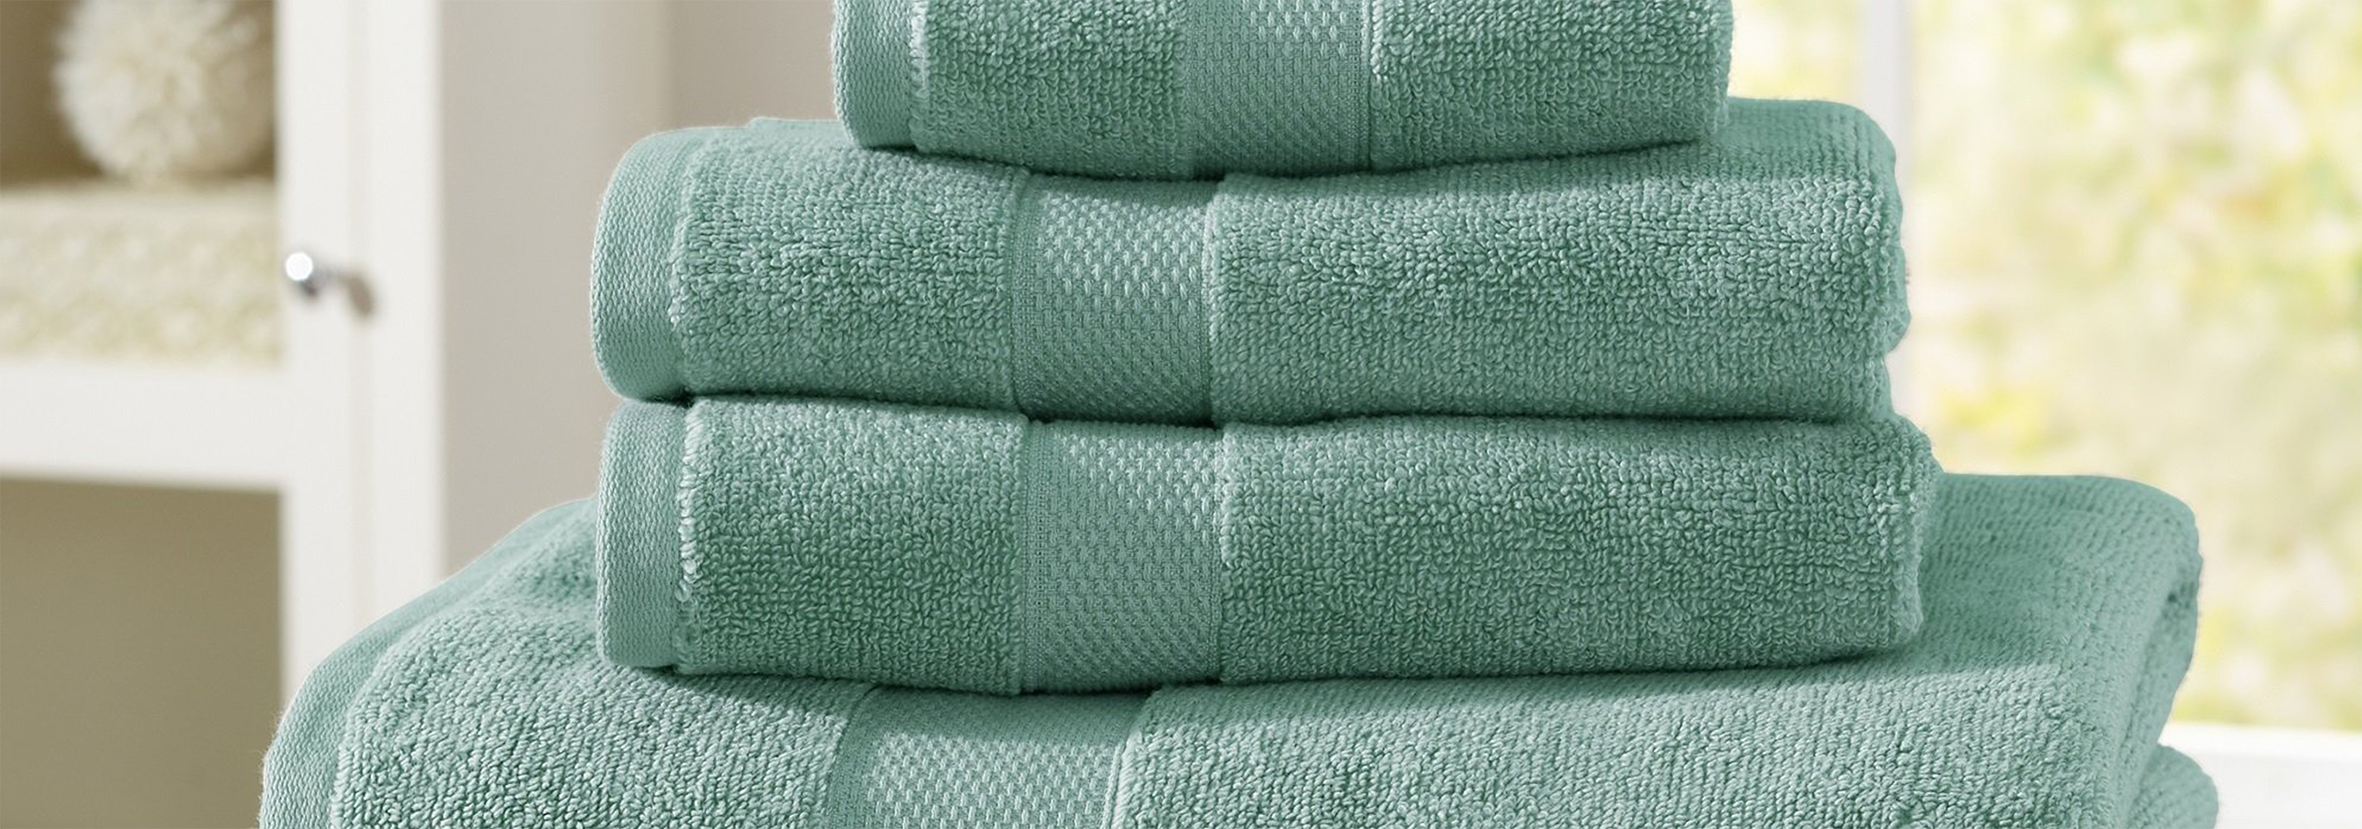 Set asciugamani: da cosa è composto